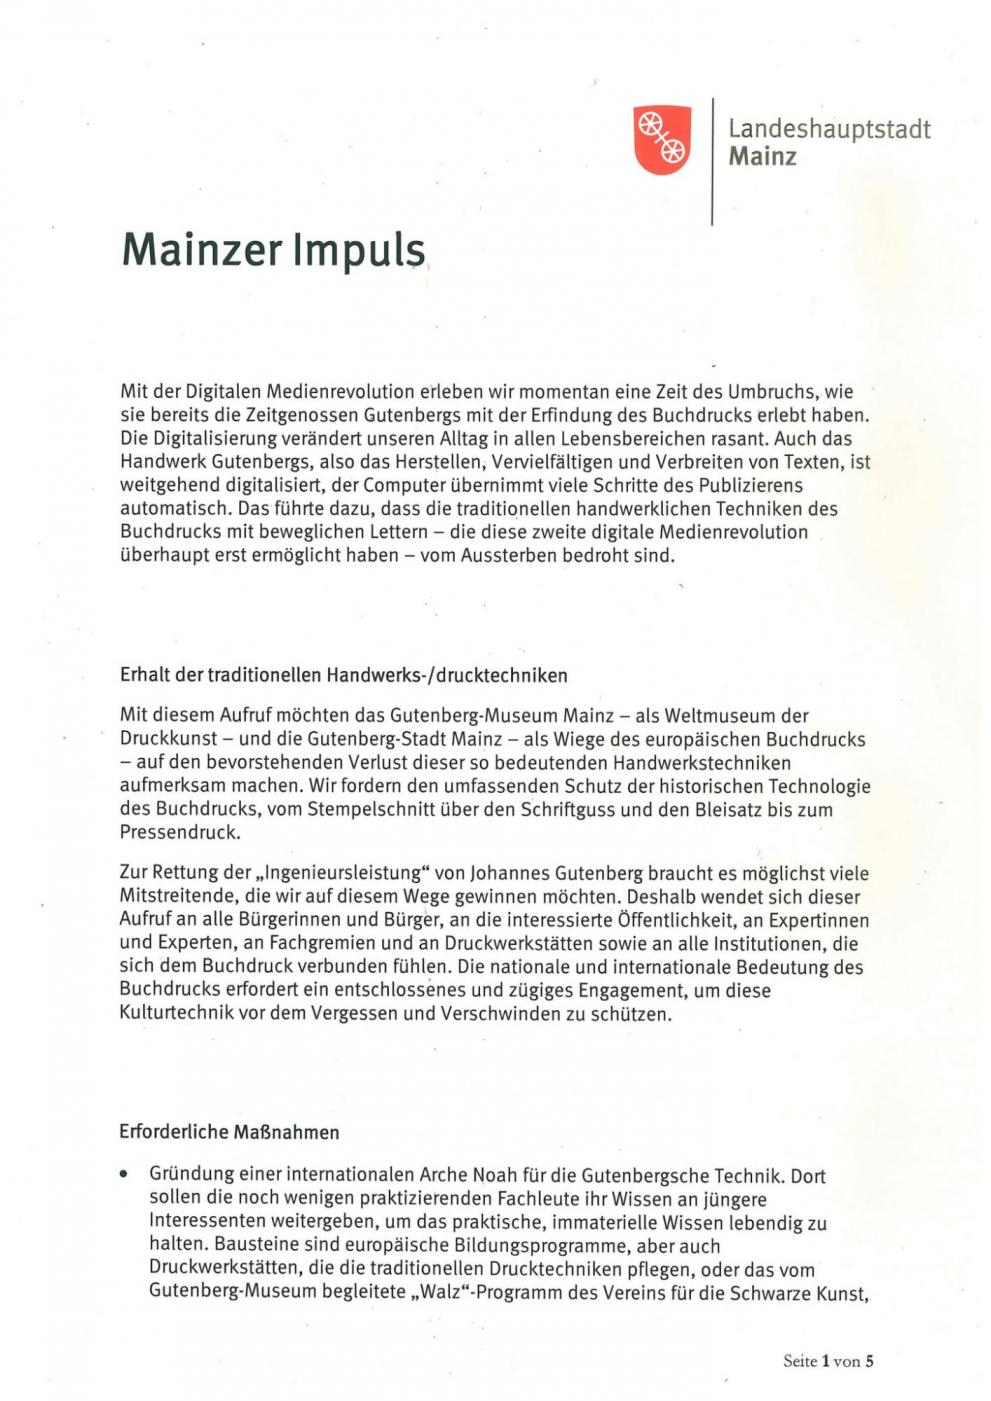 Mainzer Impuls_1.jpg